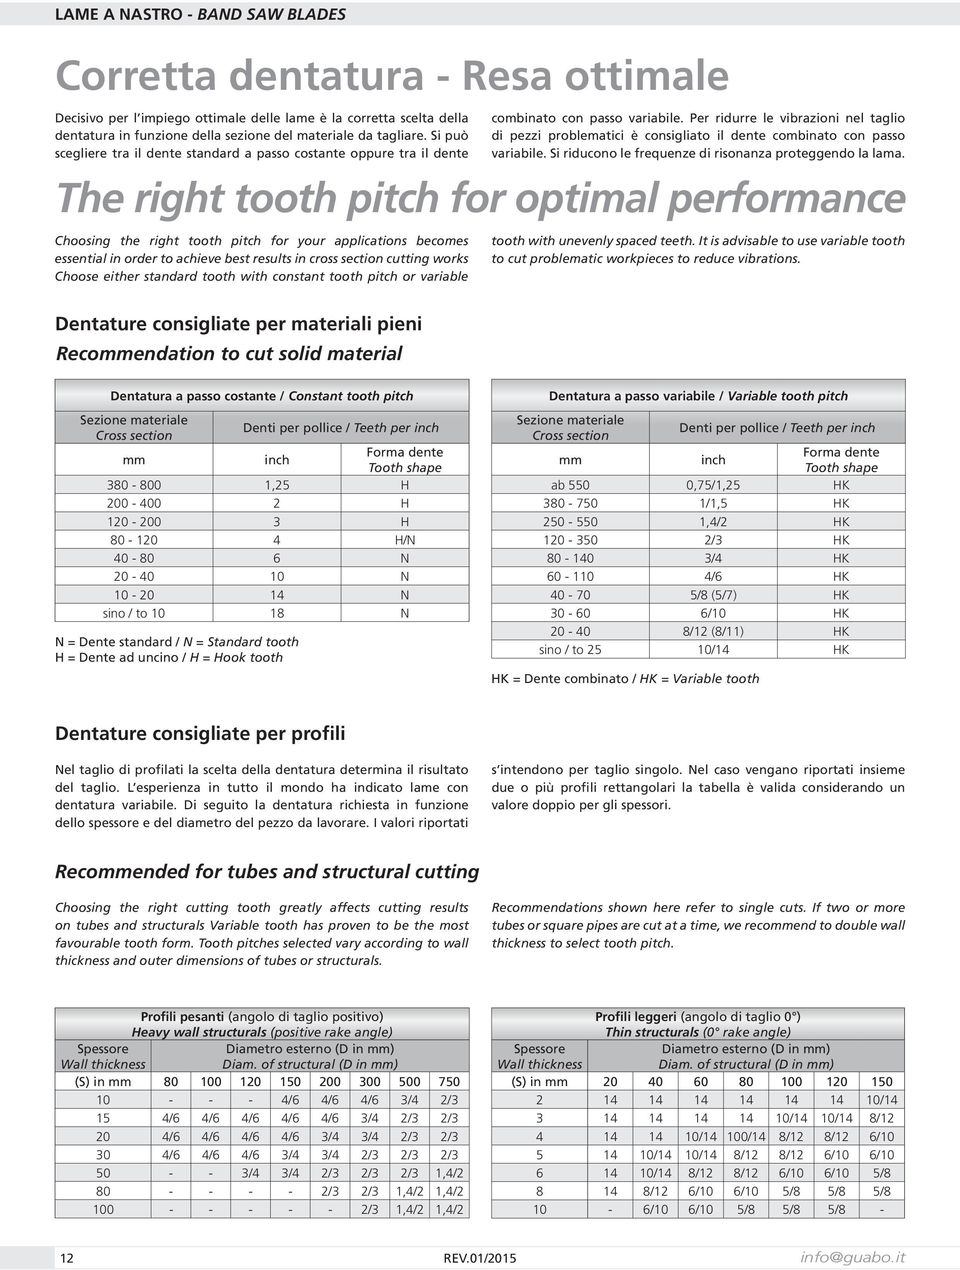 Per ridurre le vibrazioni nel taglio di pezzi problematici è consigliato il dente combinato con passo variabile. Si riducono le frequenze di risonanza proteggendo la lama.